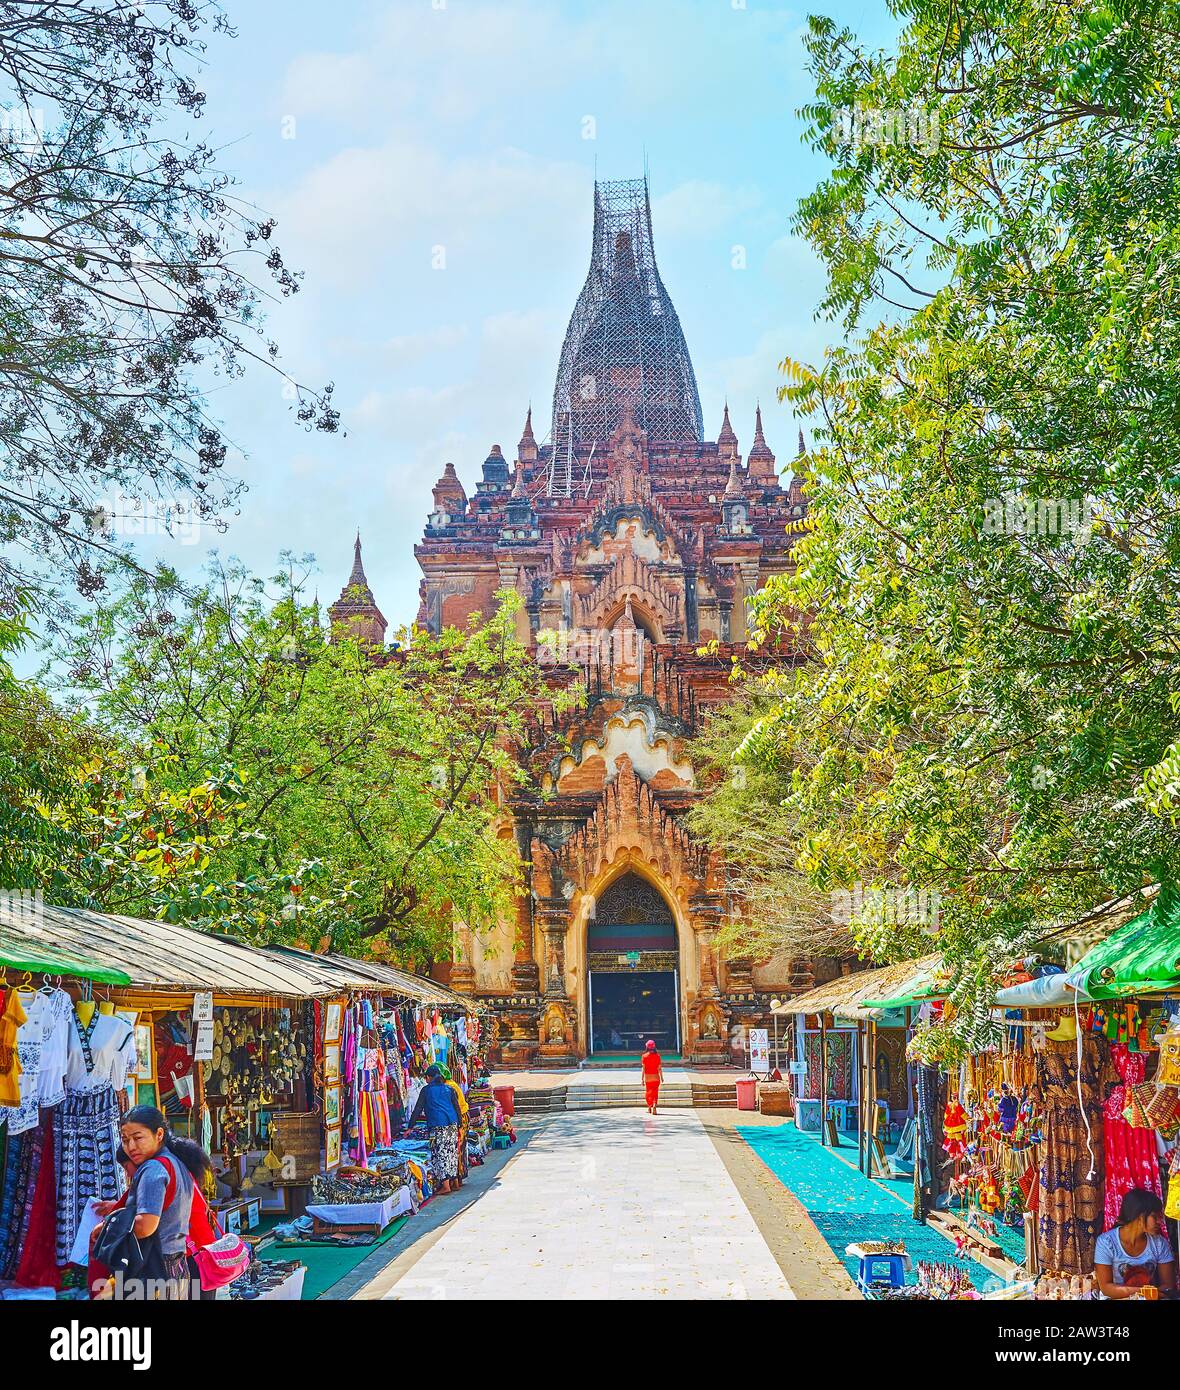 Bagan, MYANMAR - 25. FEBRUAR 2018: Die Gasse, die zum Htilominlo-Tempel führt, ist von Marktständen gesäumt und bietet Kleidungsstücke, Spielzeug, Kunsthandwerk, Suv Stockfoto